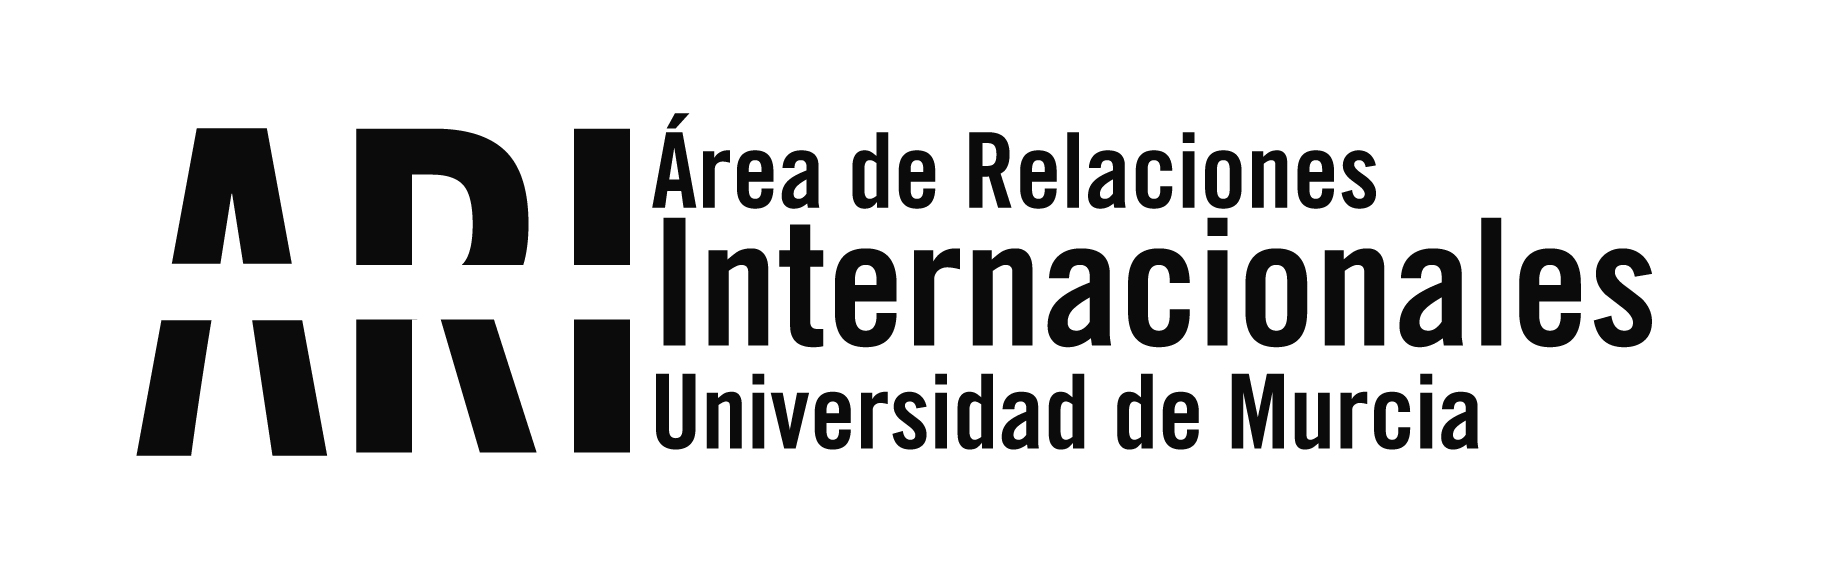 La UMU, la universidad española mejor valorada por los estudiantes extranjeros - Área de Relaciones Internacionales